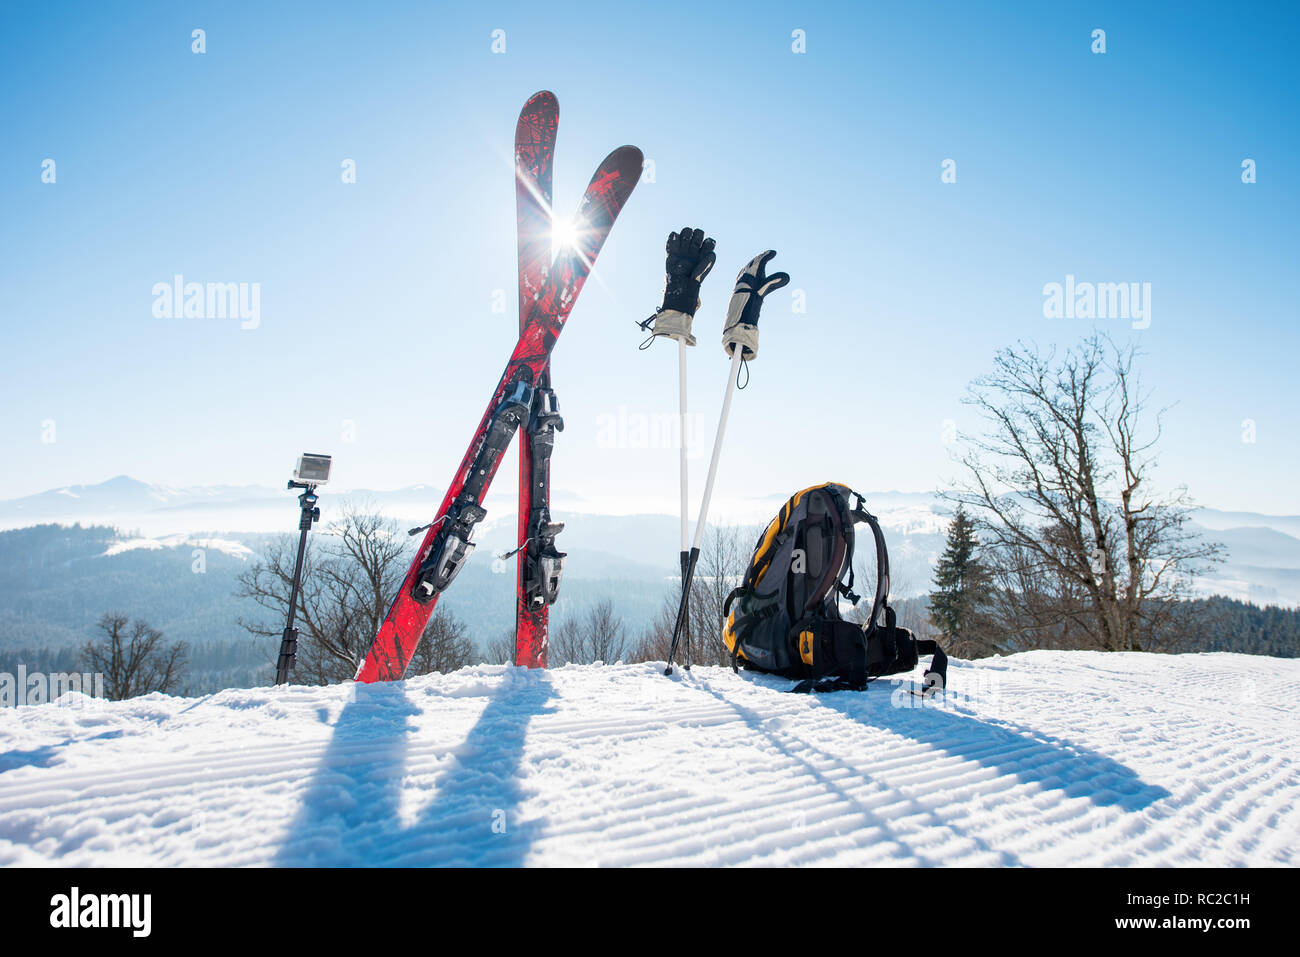 Le attrezzature da sci - sci, zaino, bastoncini, guanti e azione fotocamera su monopiede, sulla parte superiore della pista da sci a ski resort in montagna Foto Stock